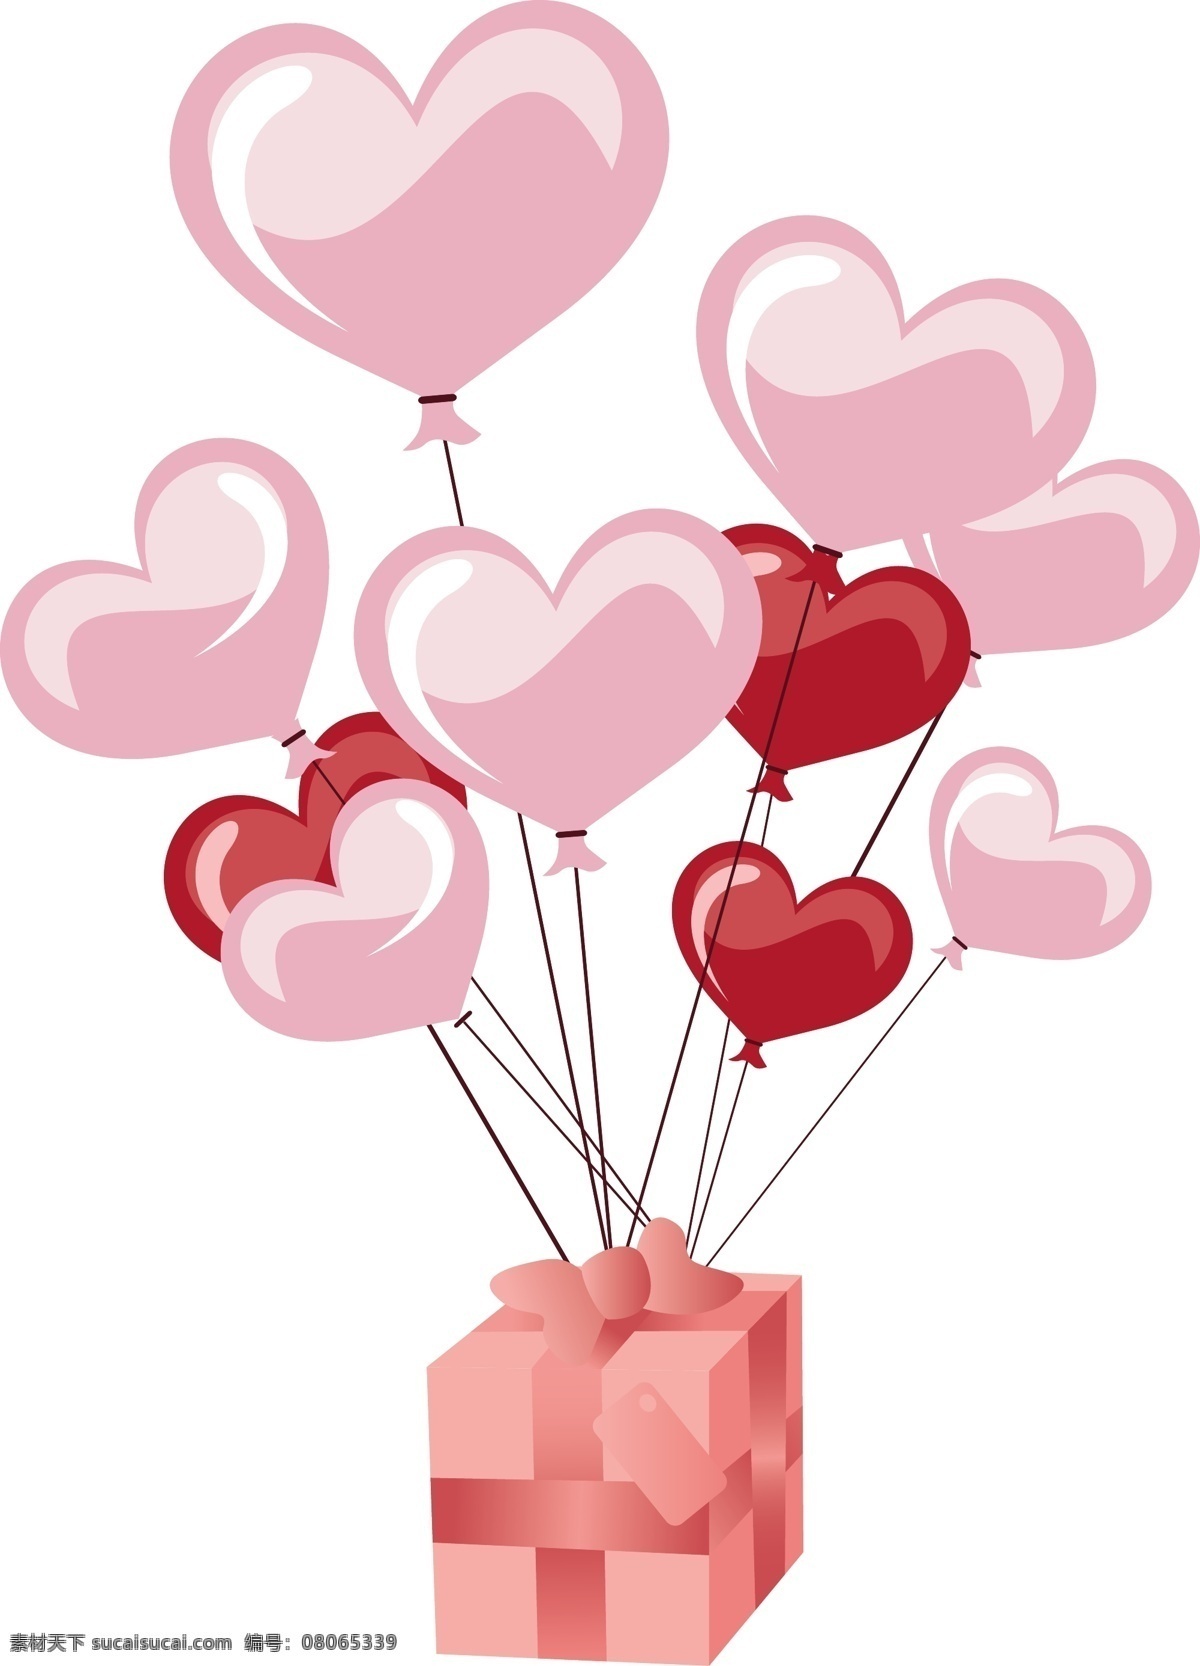 心形 气球 粉色 红色 节日素材 礼物 情人节 心形气球 矢量 模板下载 情人节七夕